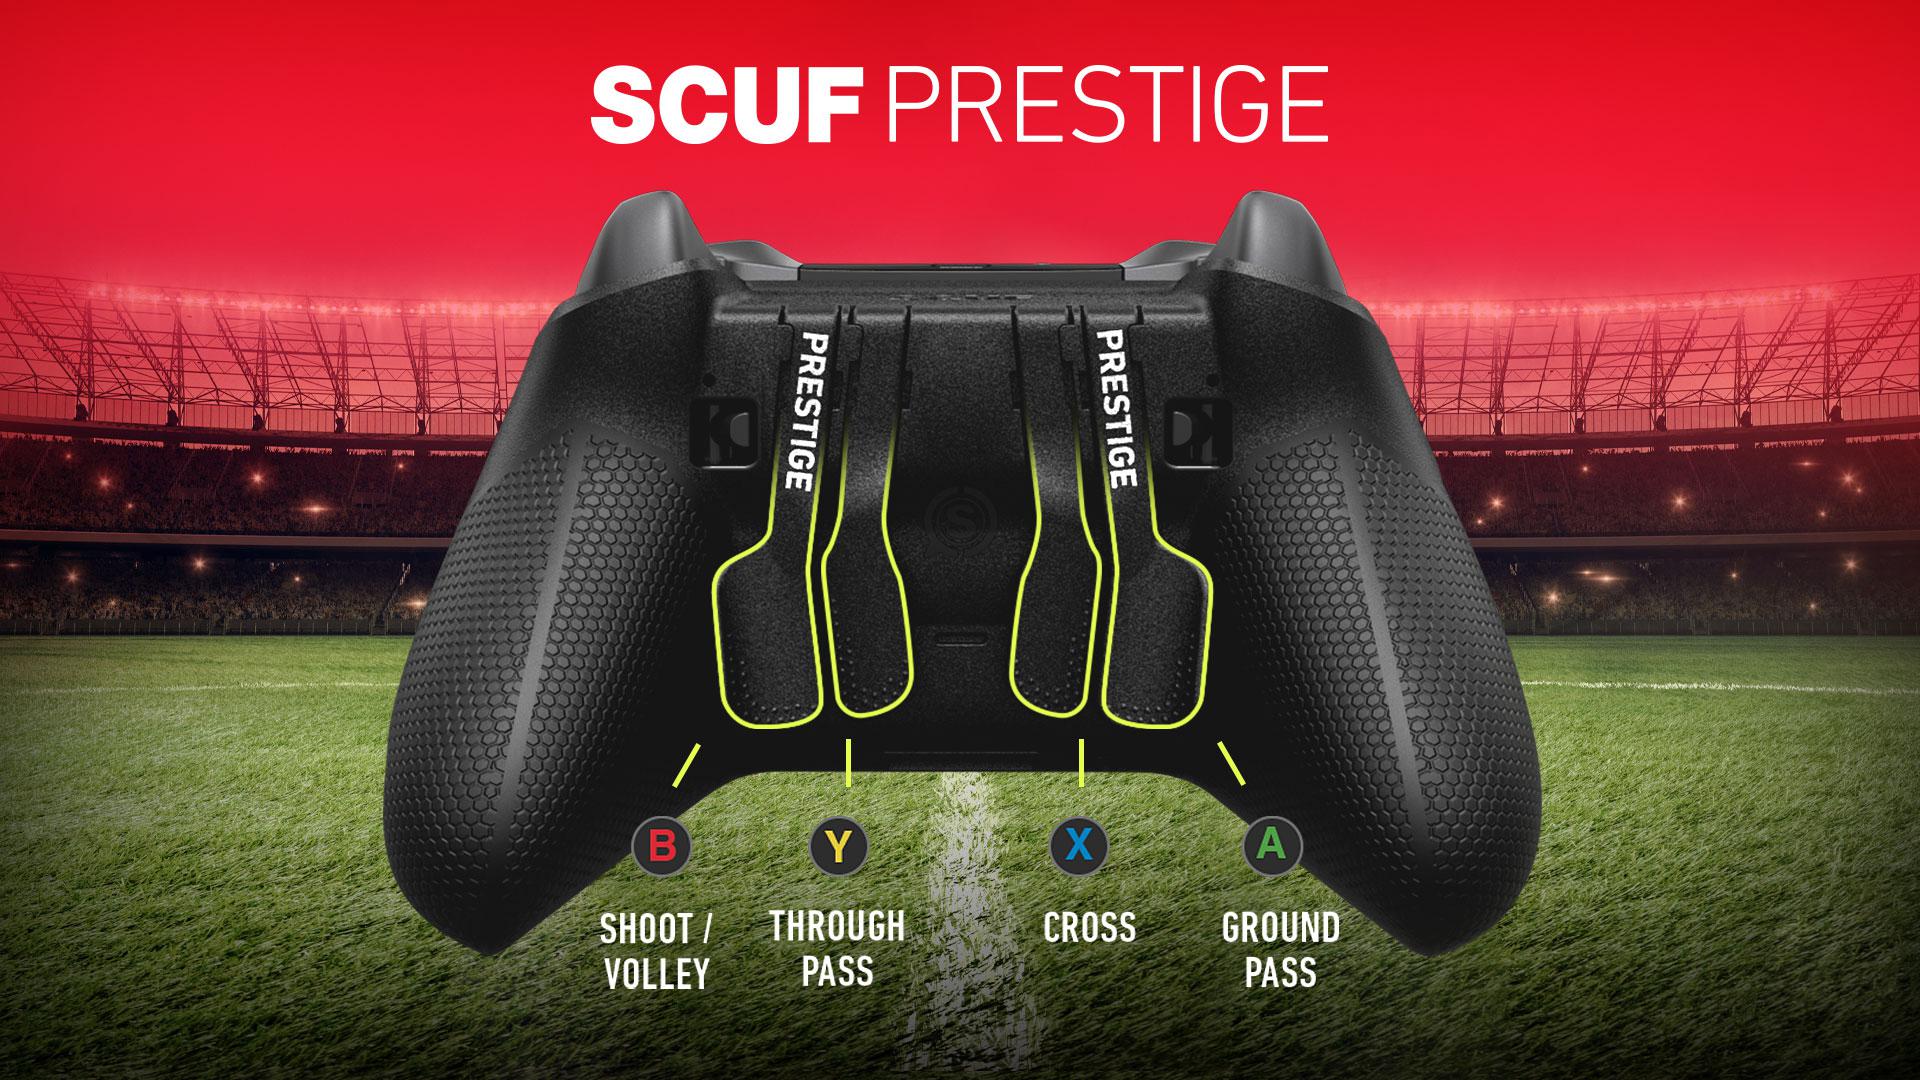 SCUF Prestige FIFA 20 Configuration